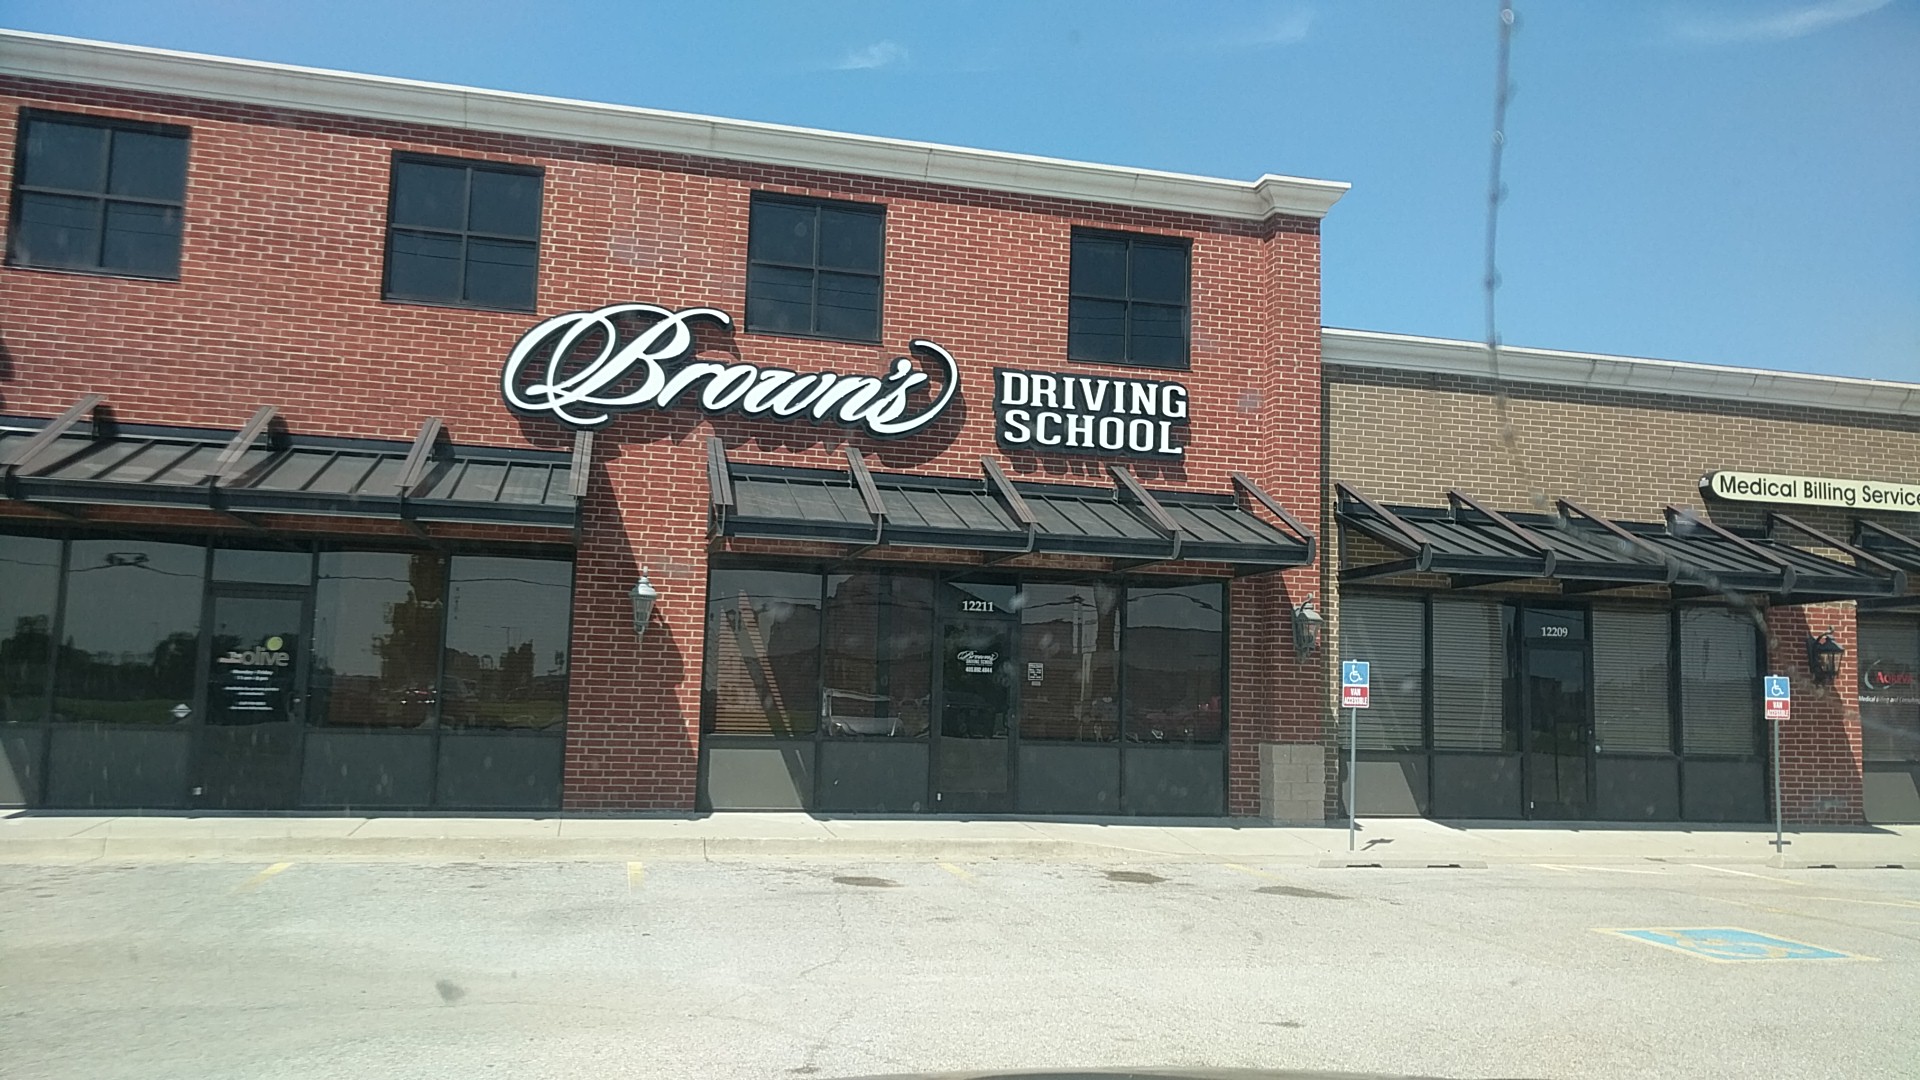 Brown's Driving School